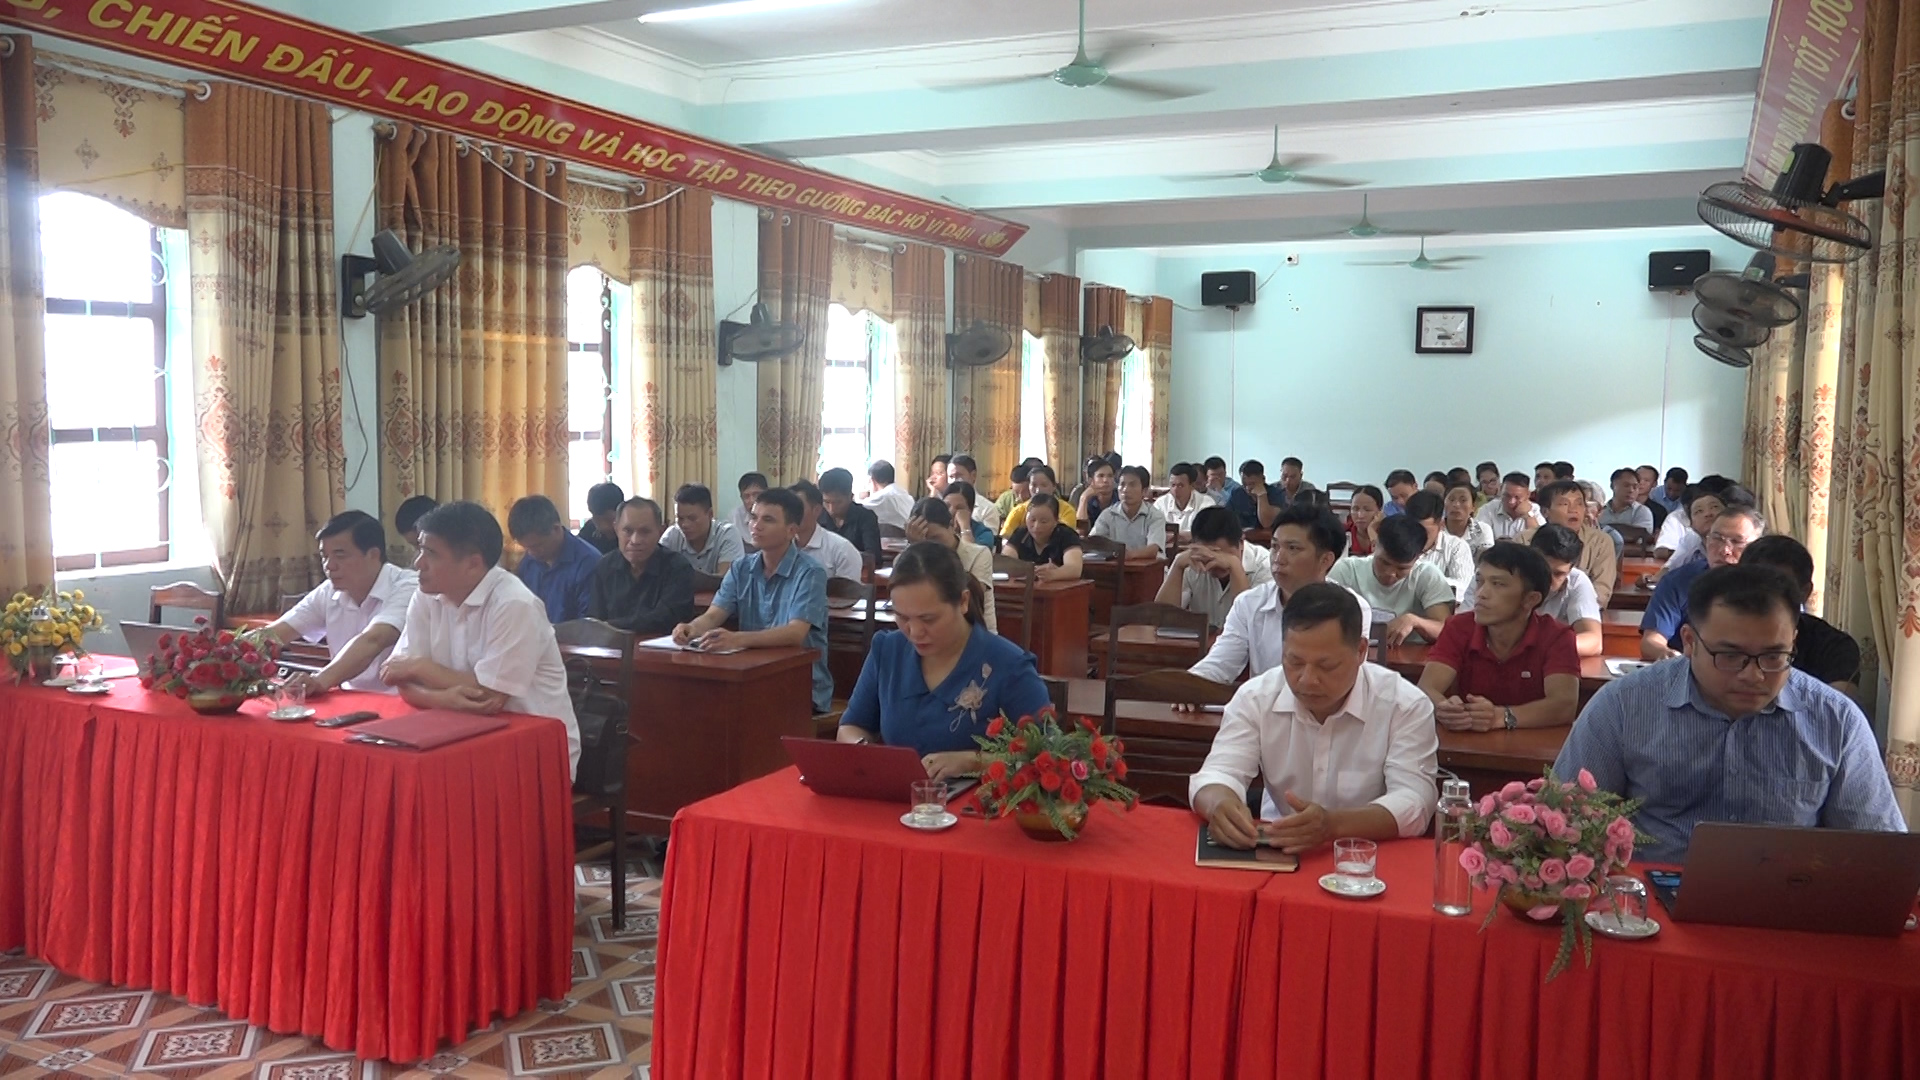 Khai giảng lớp bồi dưỡng lý luận chính trị và nghiệp vụ cho cán bộ Mặt trận Tổ quốc Việt Nam ở cơ sở